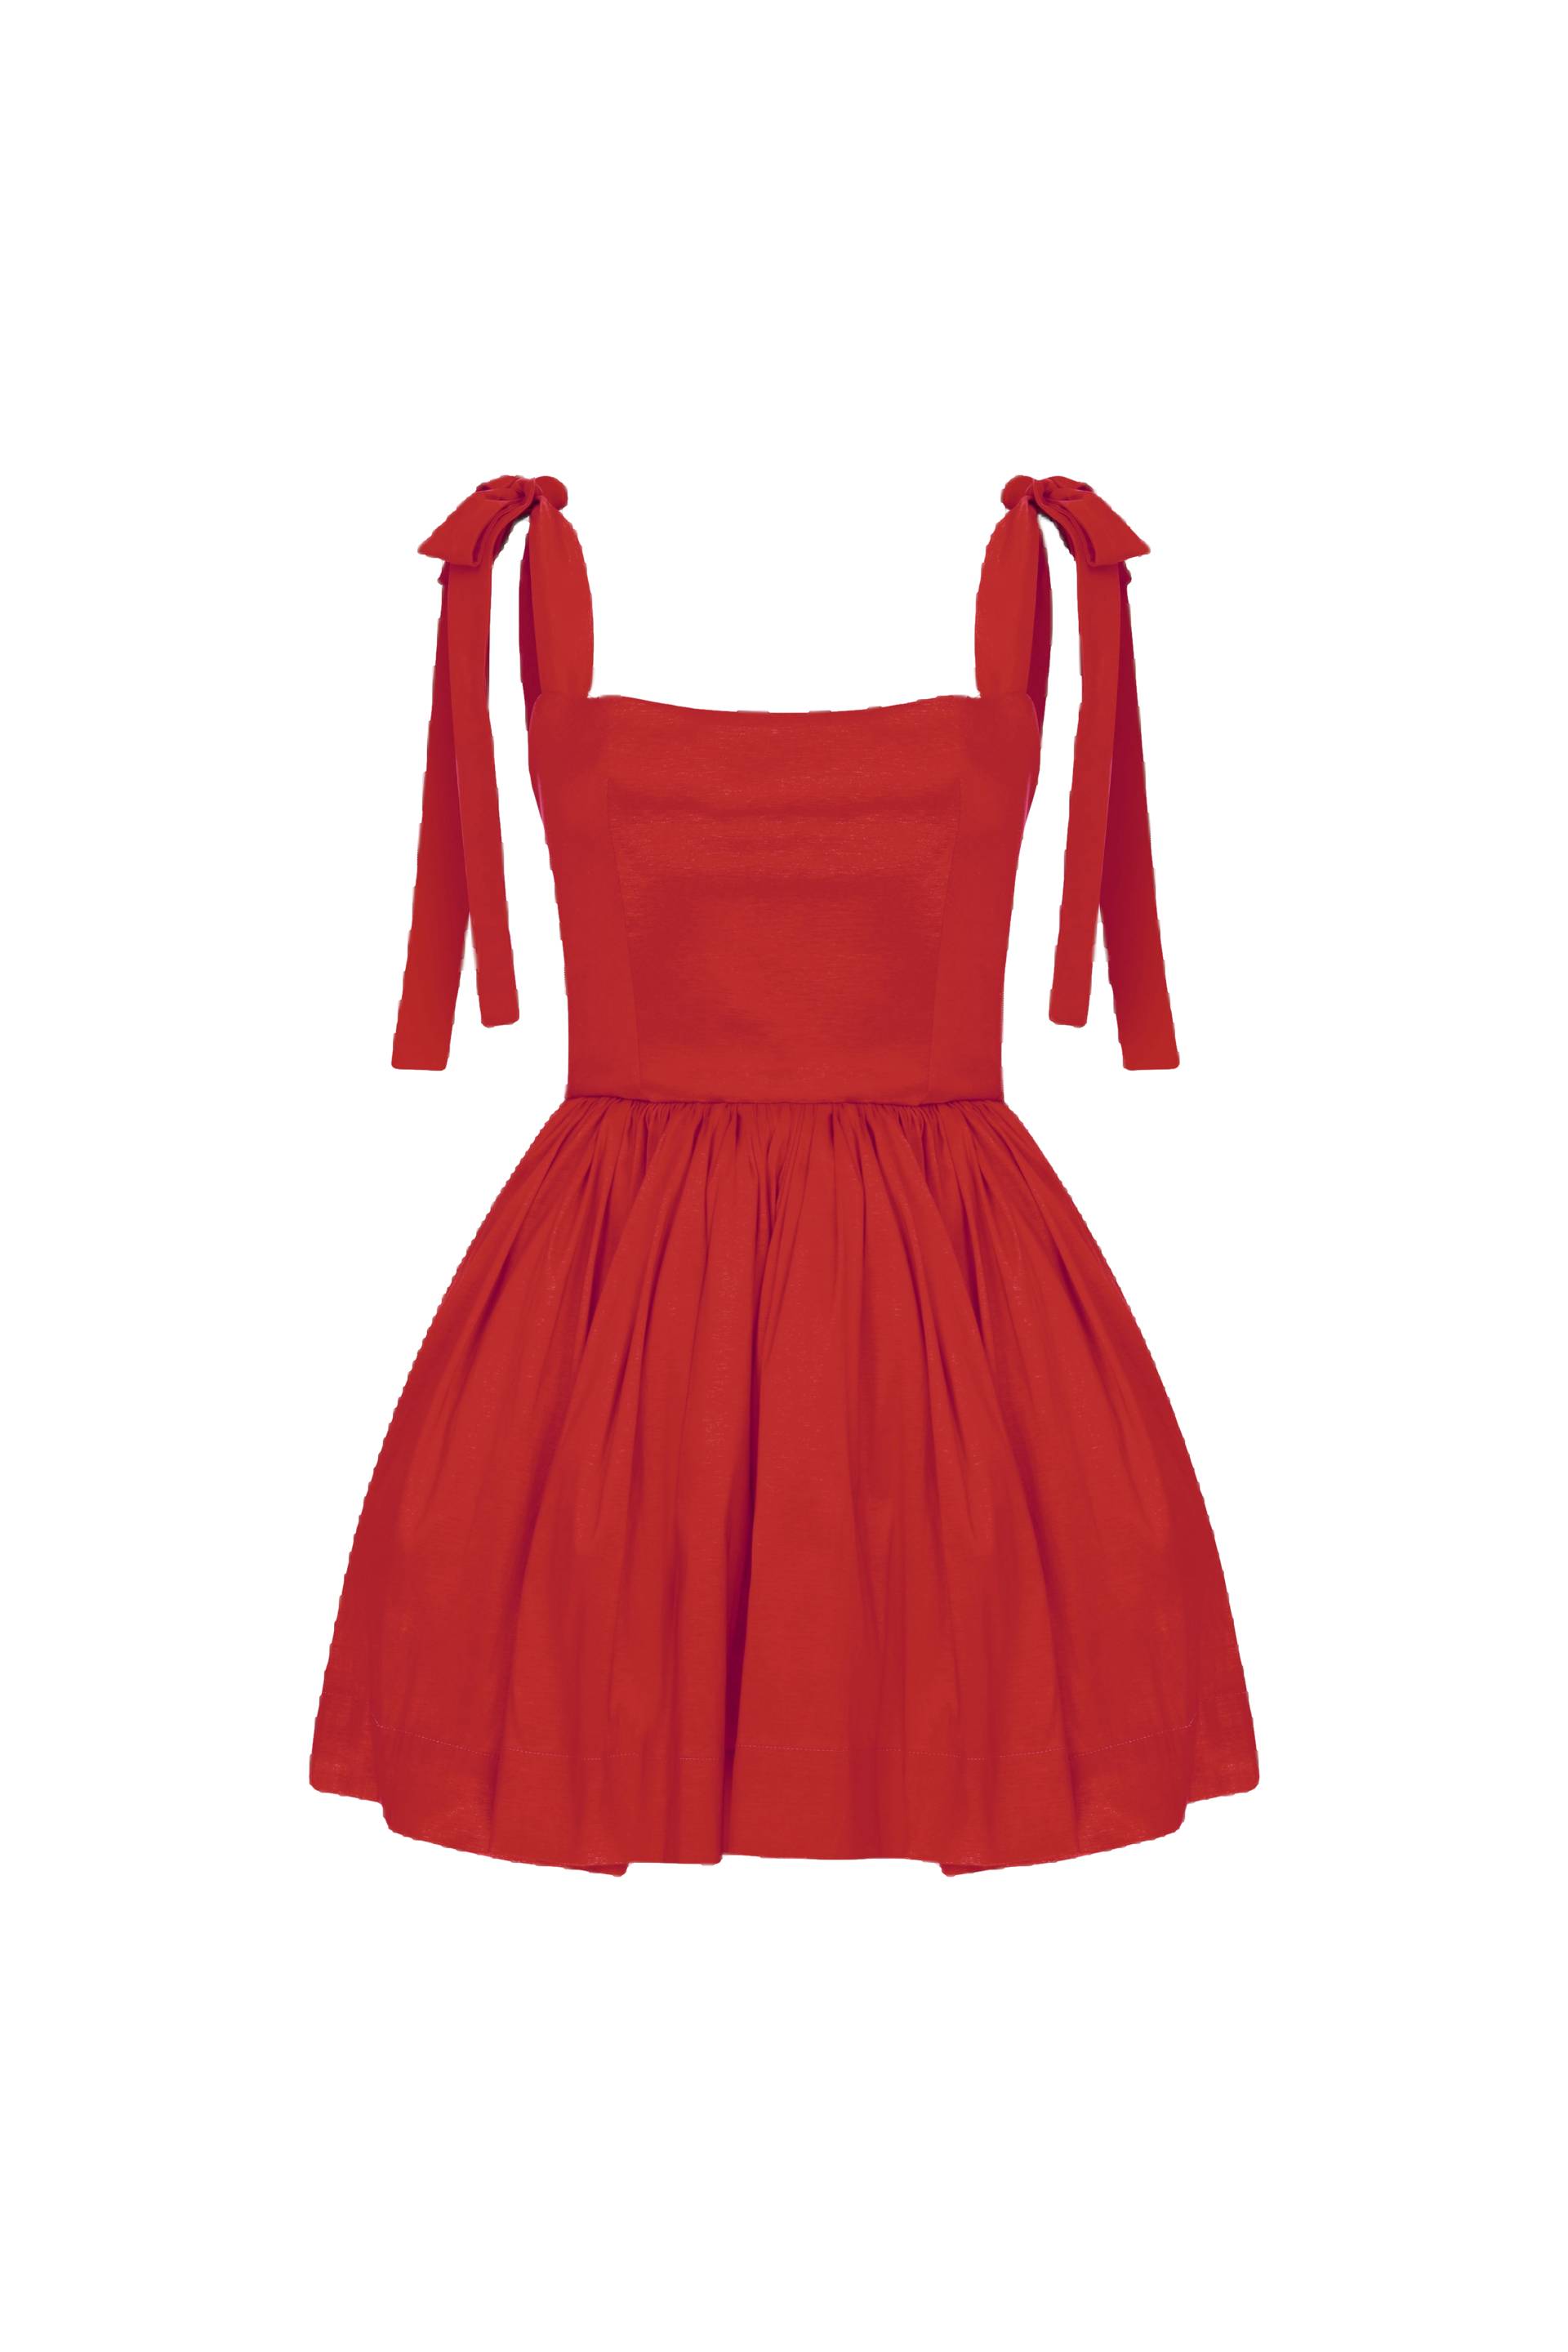 Sibby Mini Dress in Rouge von Nazli Ceren